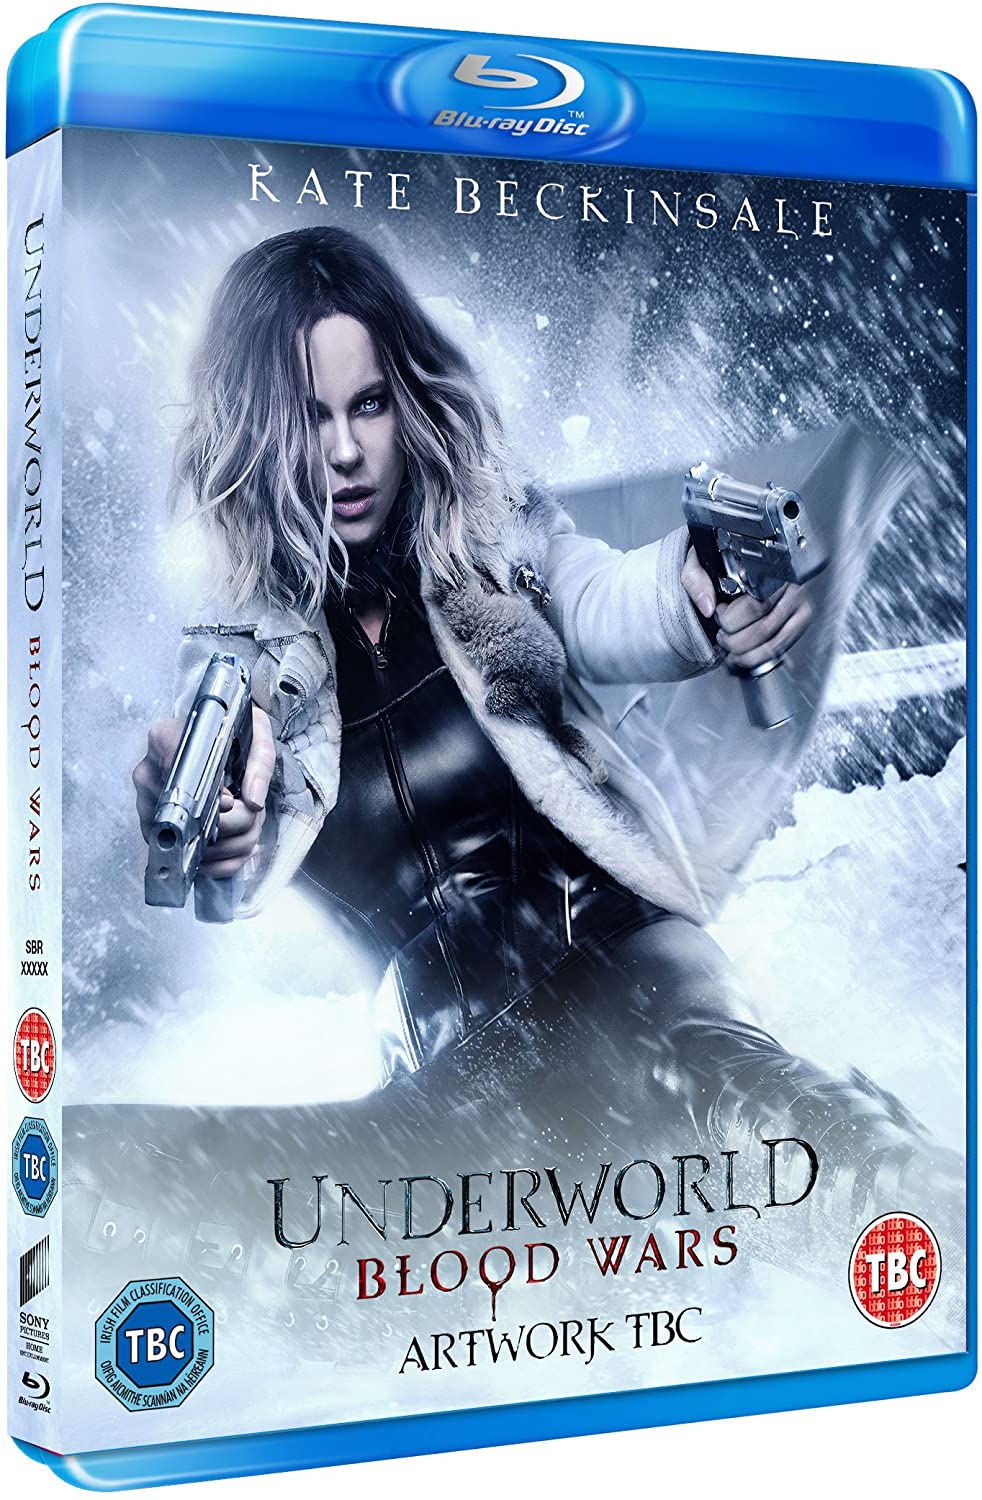 Underworld: Blood Wars – Action/Horror [Blu-ray]